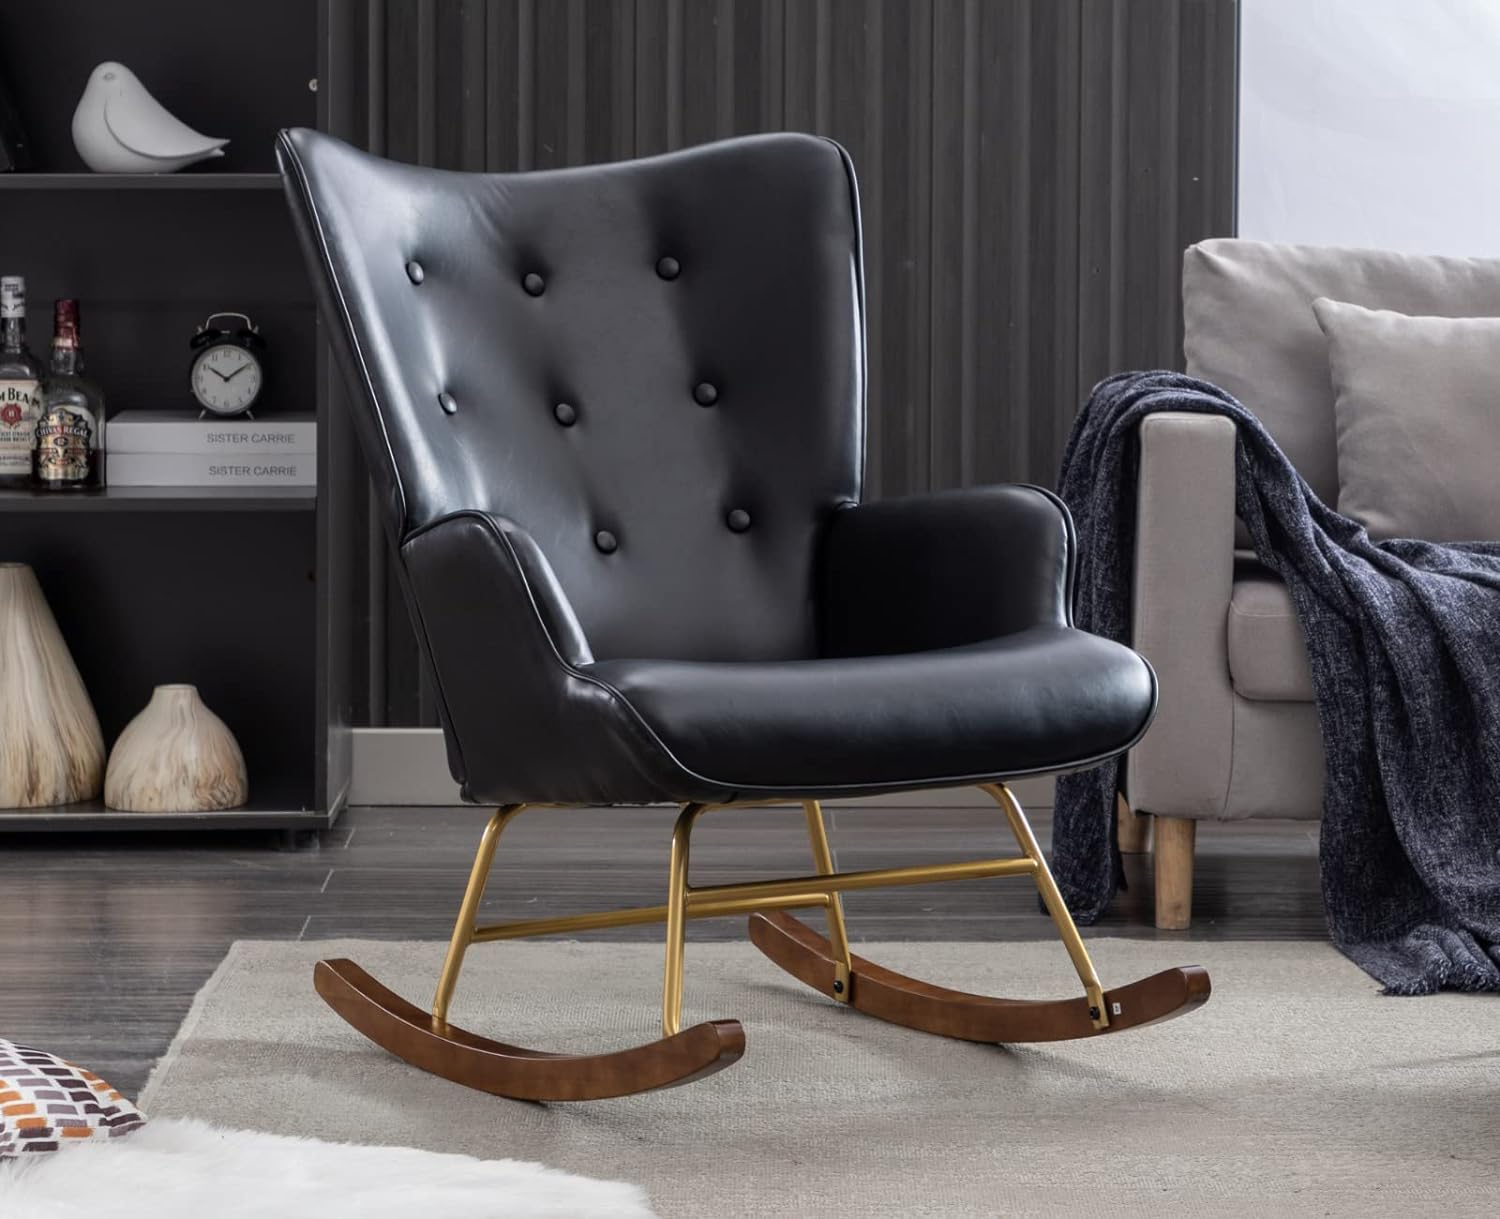 Mecedora tapizada para interiores, cómoda silla mecedora acolchada gru -  VIRTUAL MUEBLES